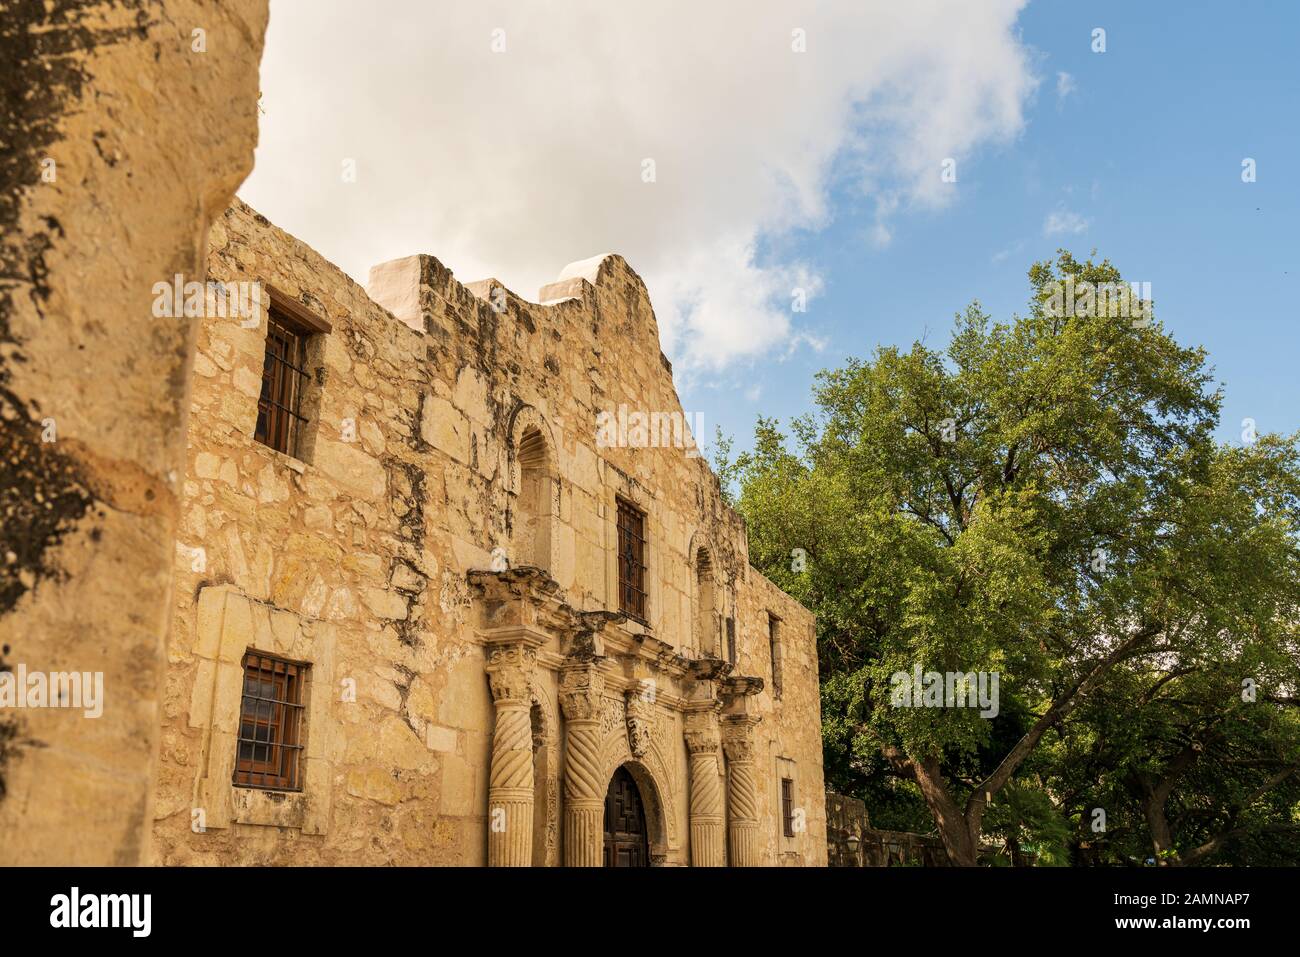 L'Alamo à San Antonio, Texas, est une mission historique espagnole qui a été construite au XVIIIe siècle et a été le lieu d'une célèbre bataille. Banque D'Images